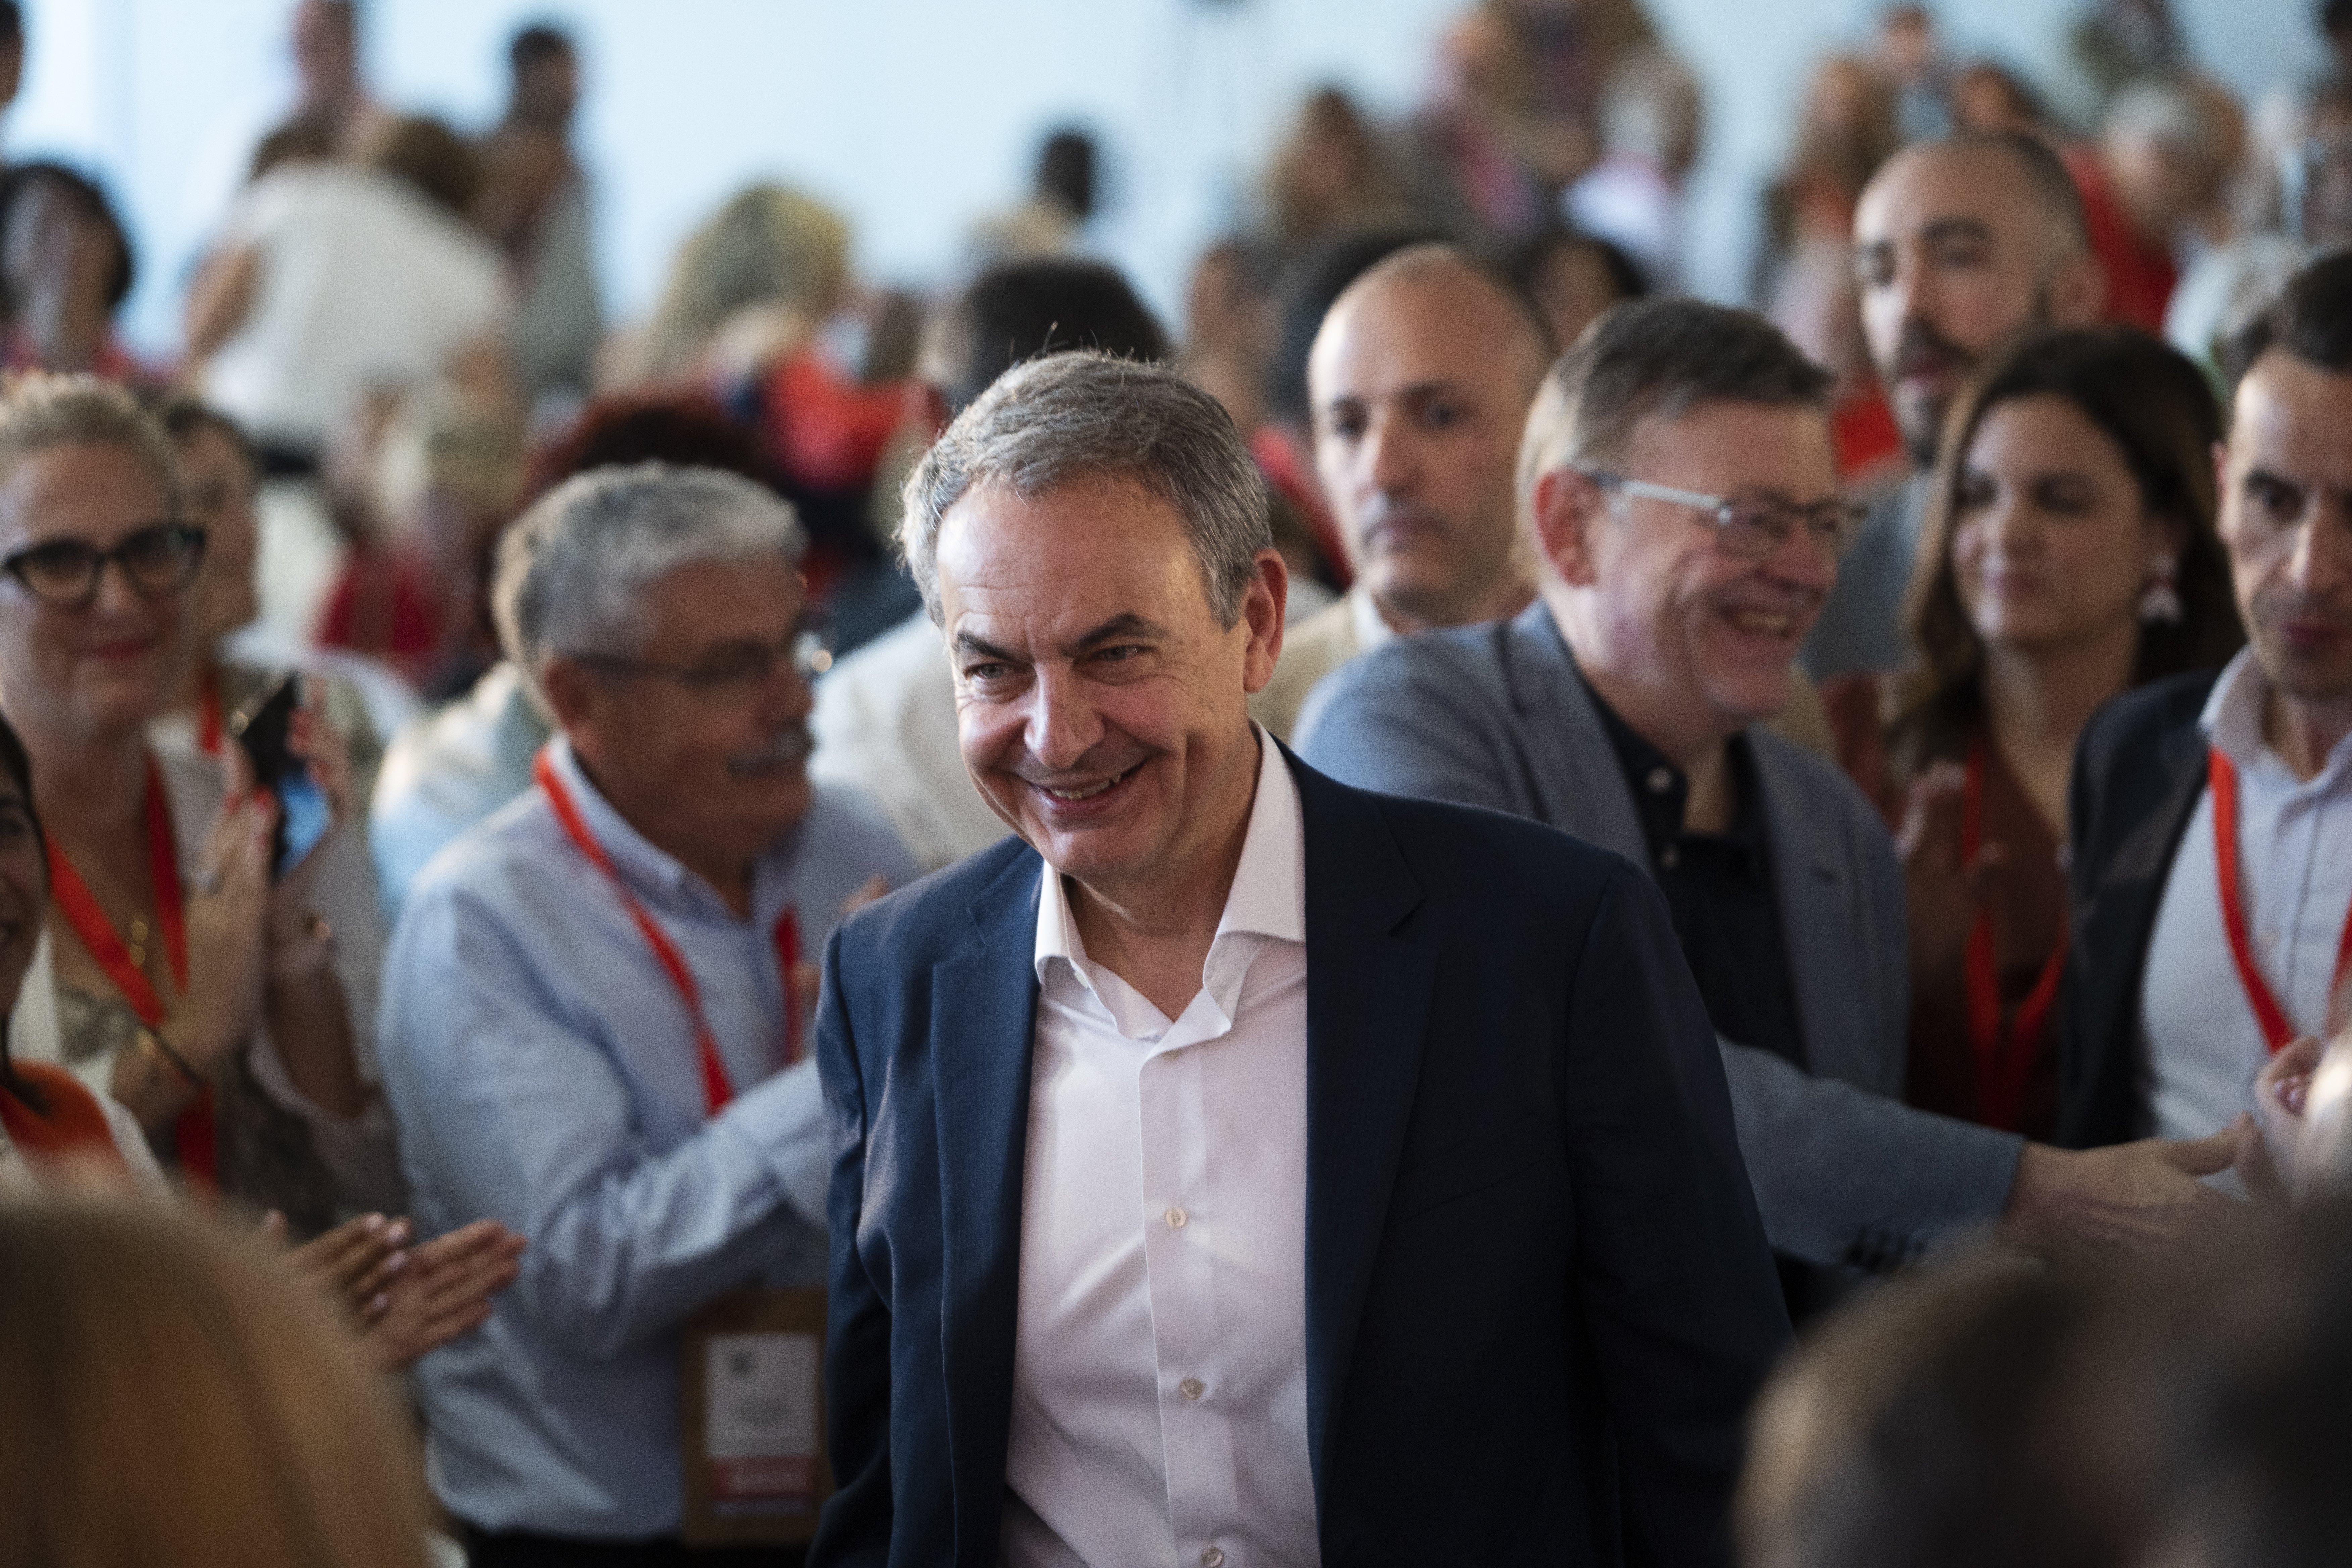 Les floretes de Zapatero a Sánchez pels indults; "Amb pau i sense violència a Catalunya"